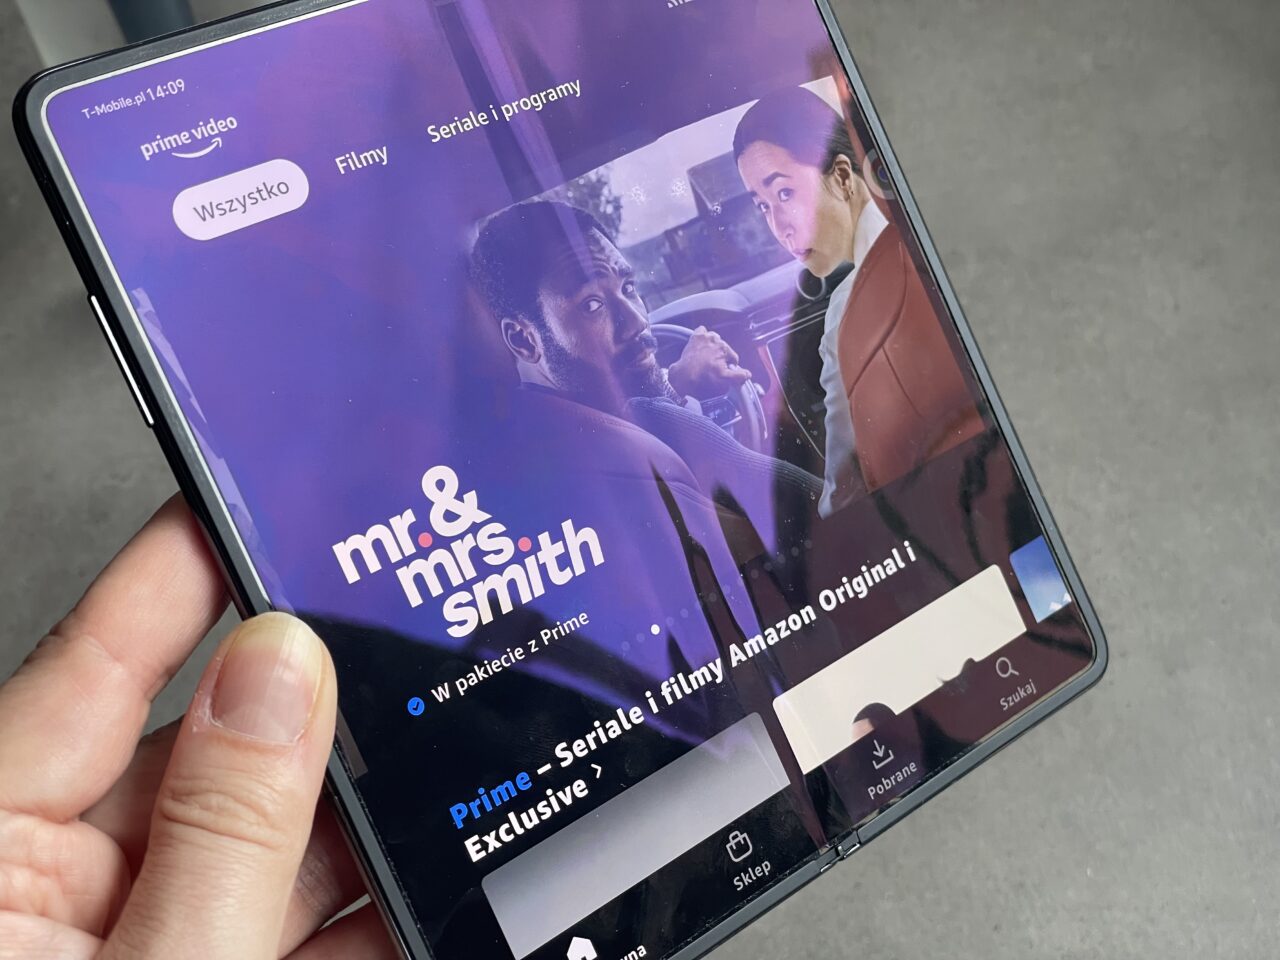 Dłoń trzymająca smartfon z otwartą aplikacją Prime Video wyświetlającą miniaturę filmu "Mr. & Mrs. Smith" z opcją "W pakiecie z Prime" oraz oznaczeniem "Prime – Seriale i filmy Amazon Originals".